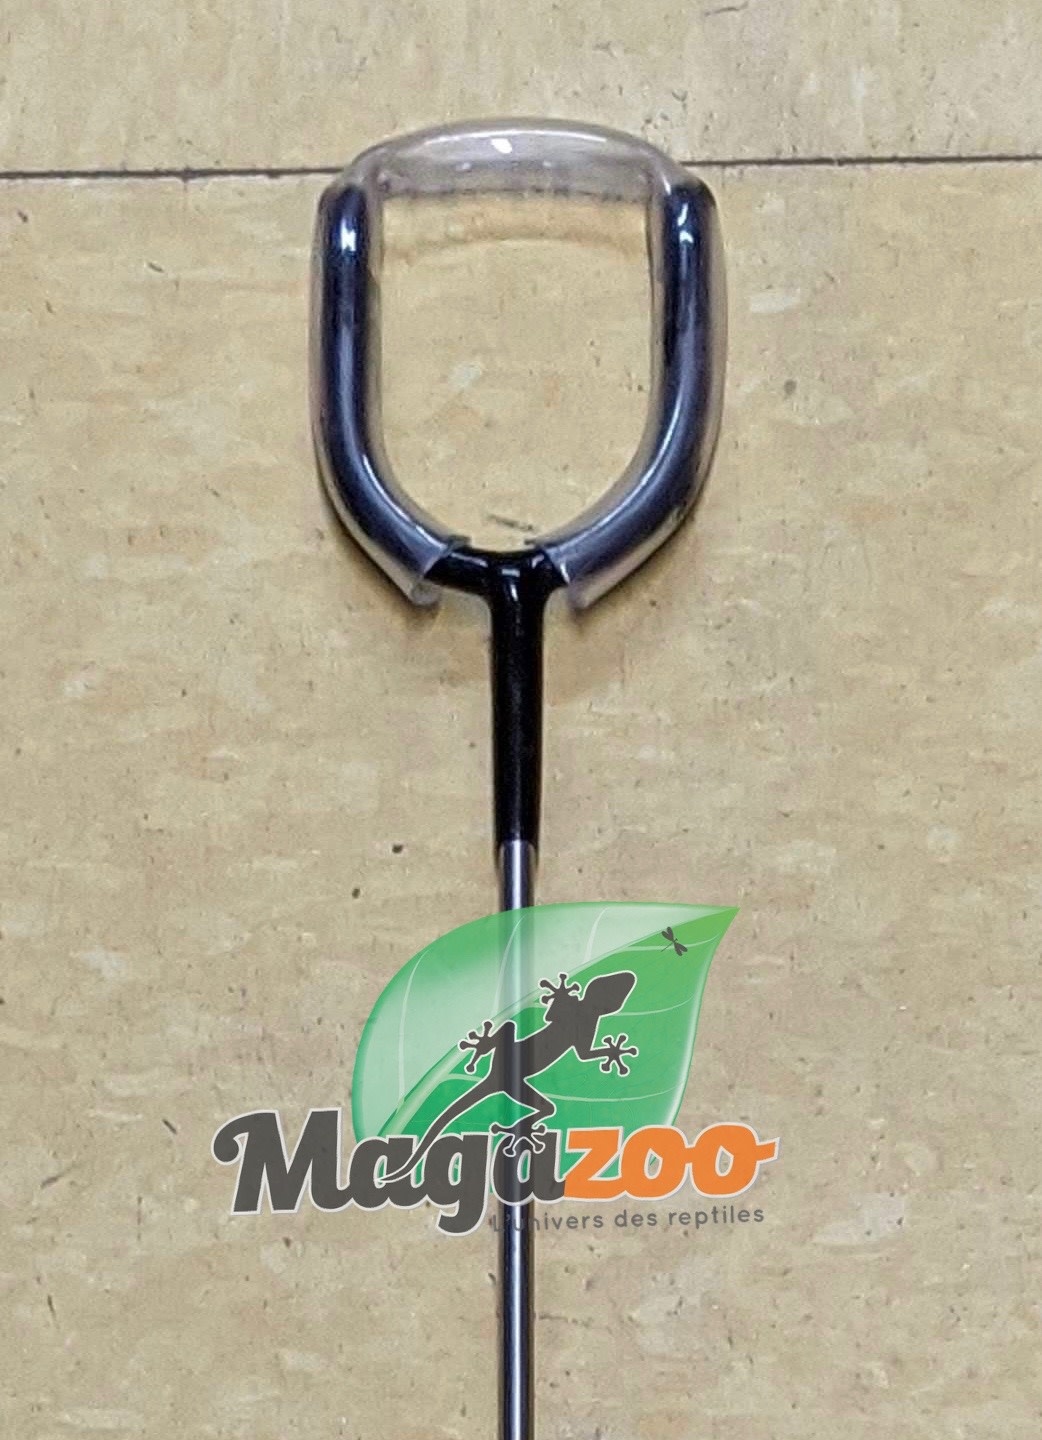 Magazoo Snake Pinner 24 in.